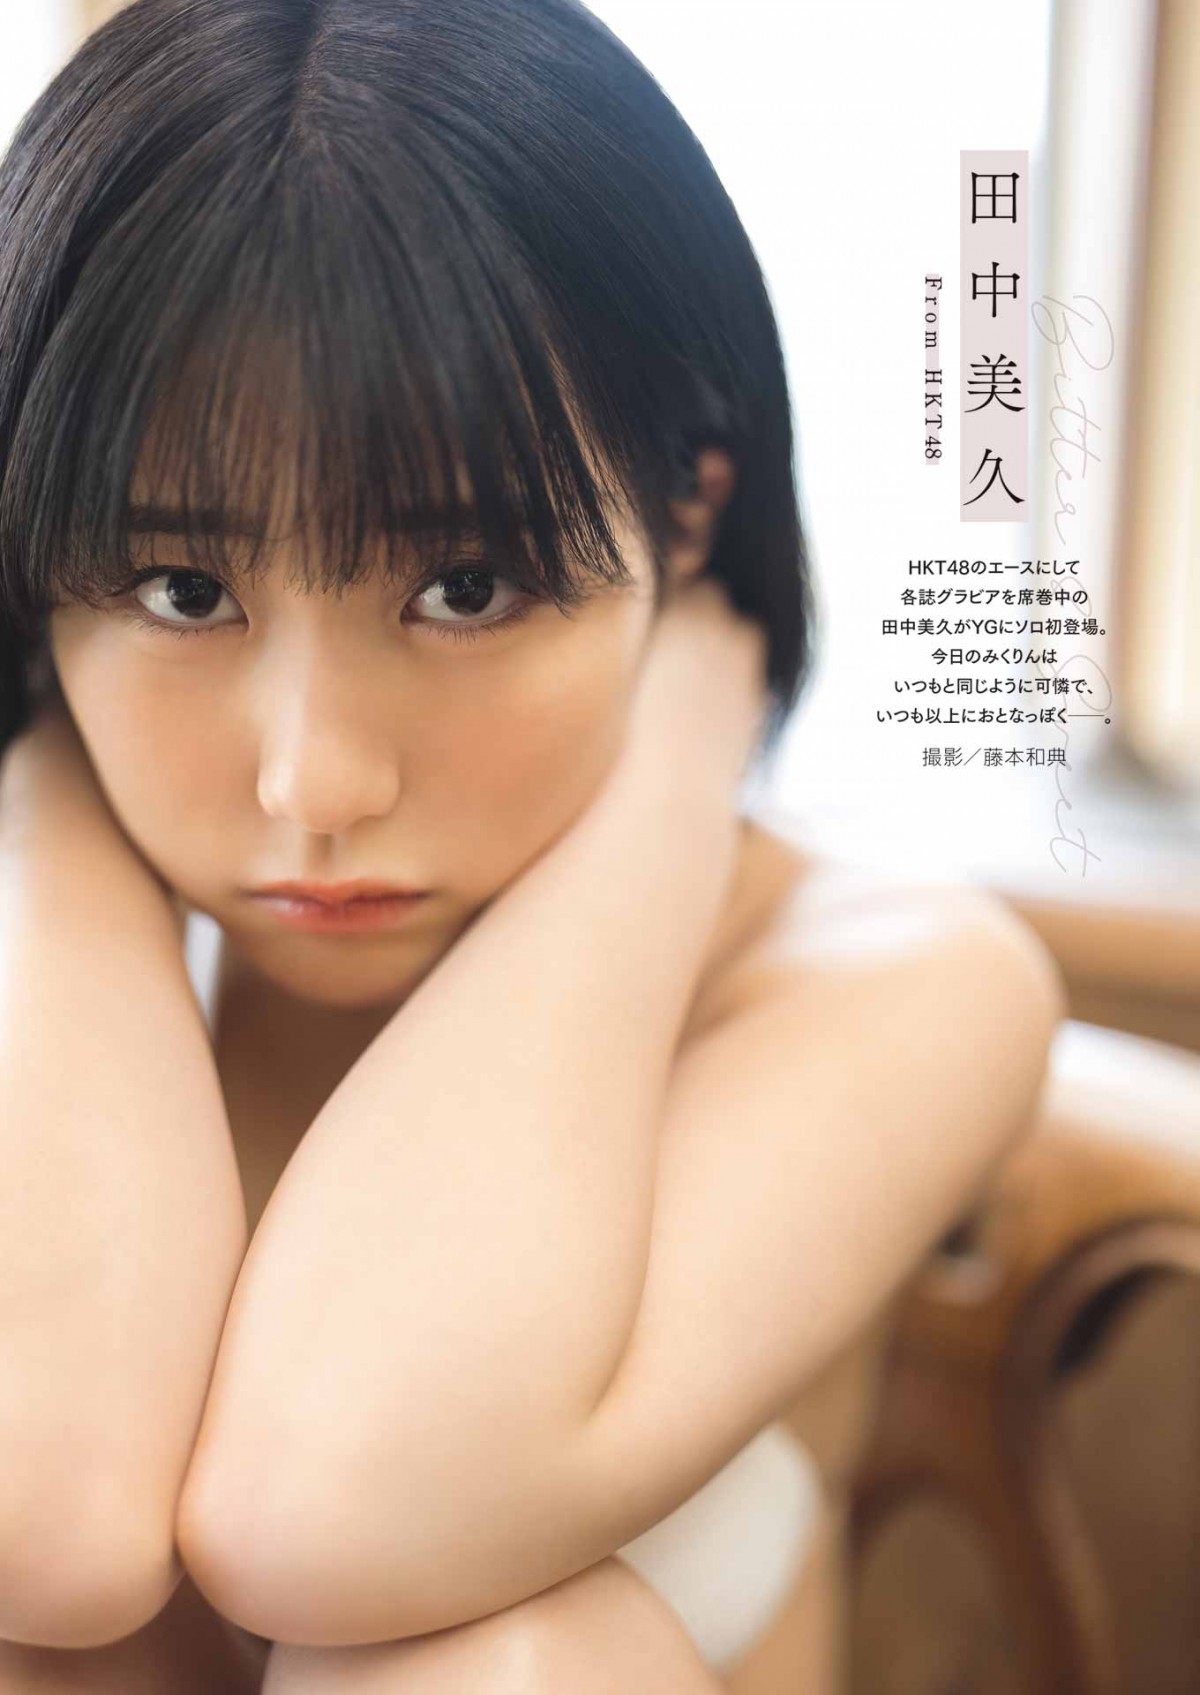 “グラビア界のニューヒロイン”HKT48・田中美久、漆黒の水着姿を披露